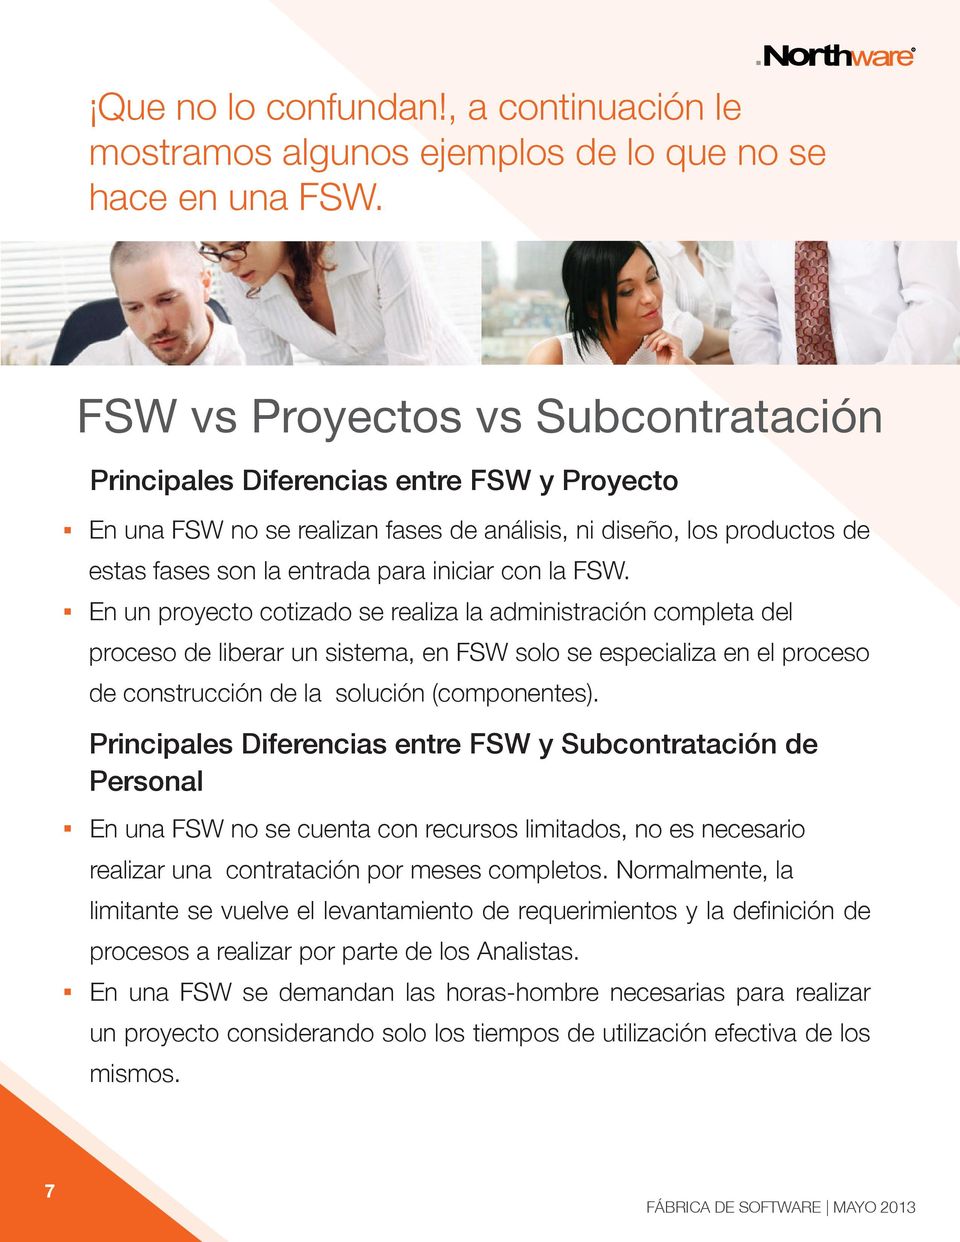 la FSW. En un proyecto cotizado se realiza la administración completa del proceso de liberar un sistema, en FSW solo se especializa en el proceso de construcción de la solución (componentes).